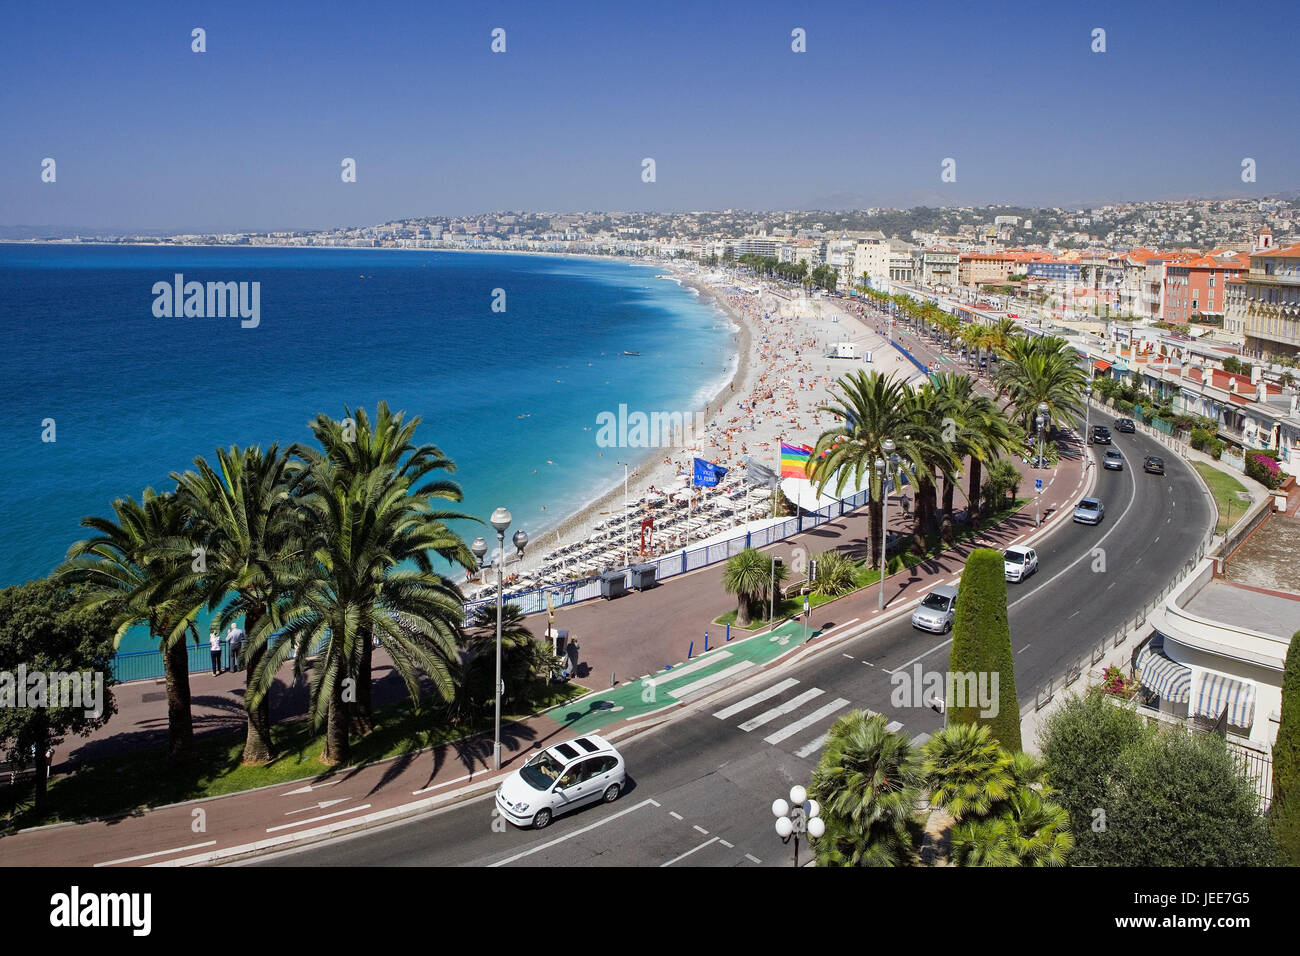 Francia, Provence Cote d'Azur, Niza, ciudad, playa, el sur de Francia, en la costa mediterránea, la playa, los bañistas, la gente, los turistas, el paseo marítimo, el paseo marítimo, la calle, el tráfico, la escena callejera, destino, turismo Foto de stock